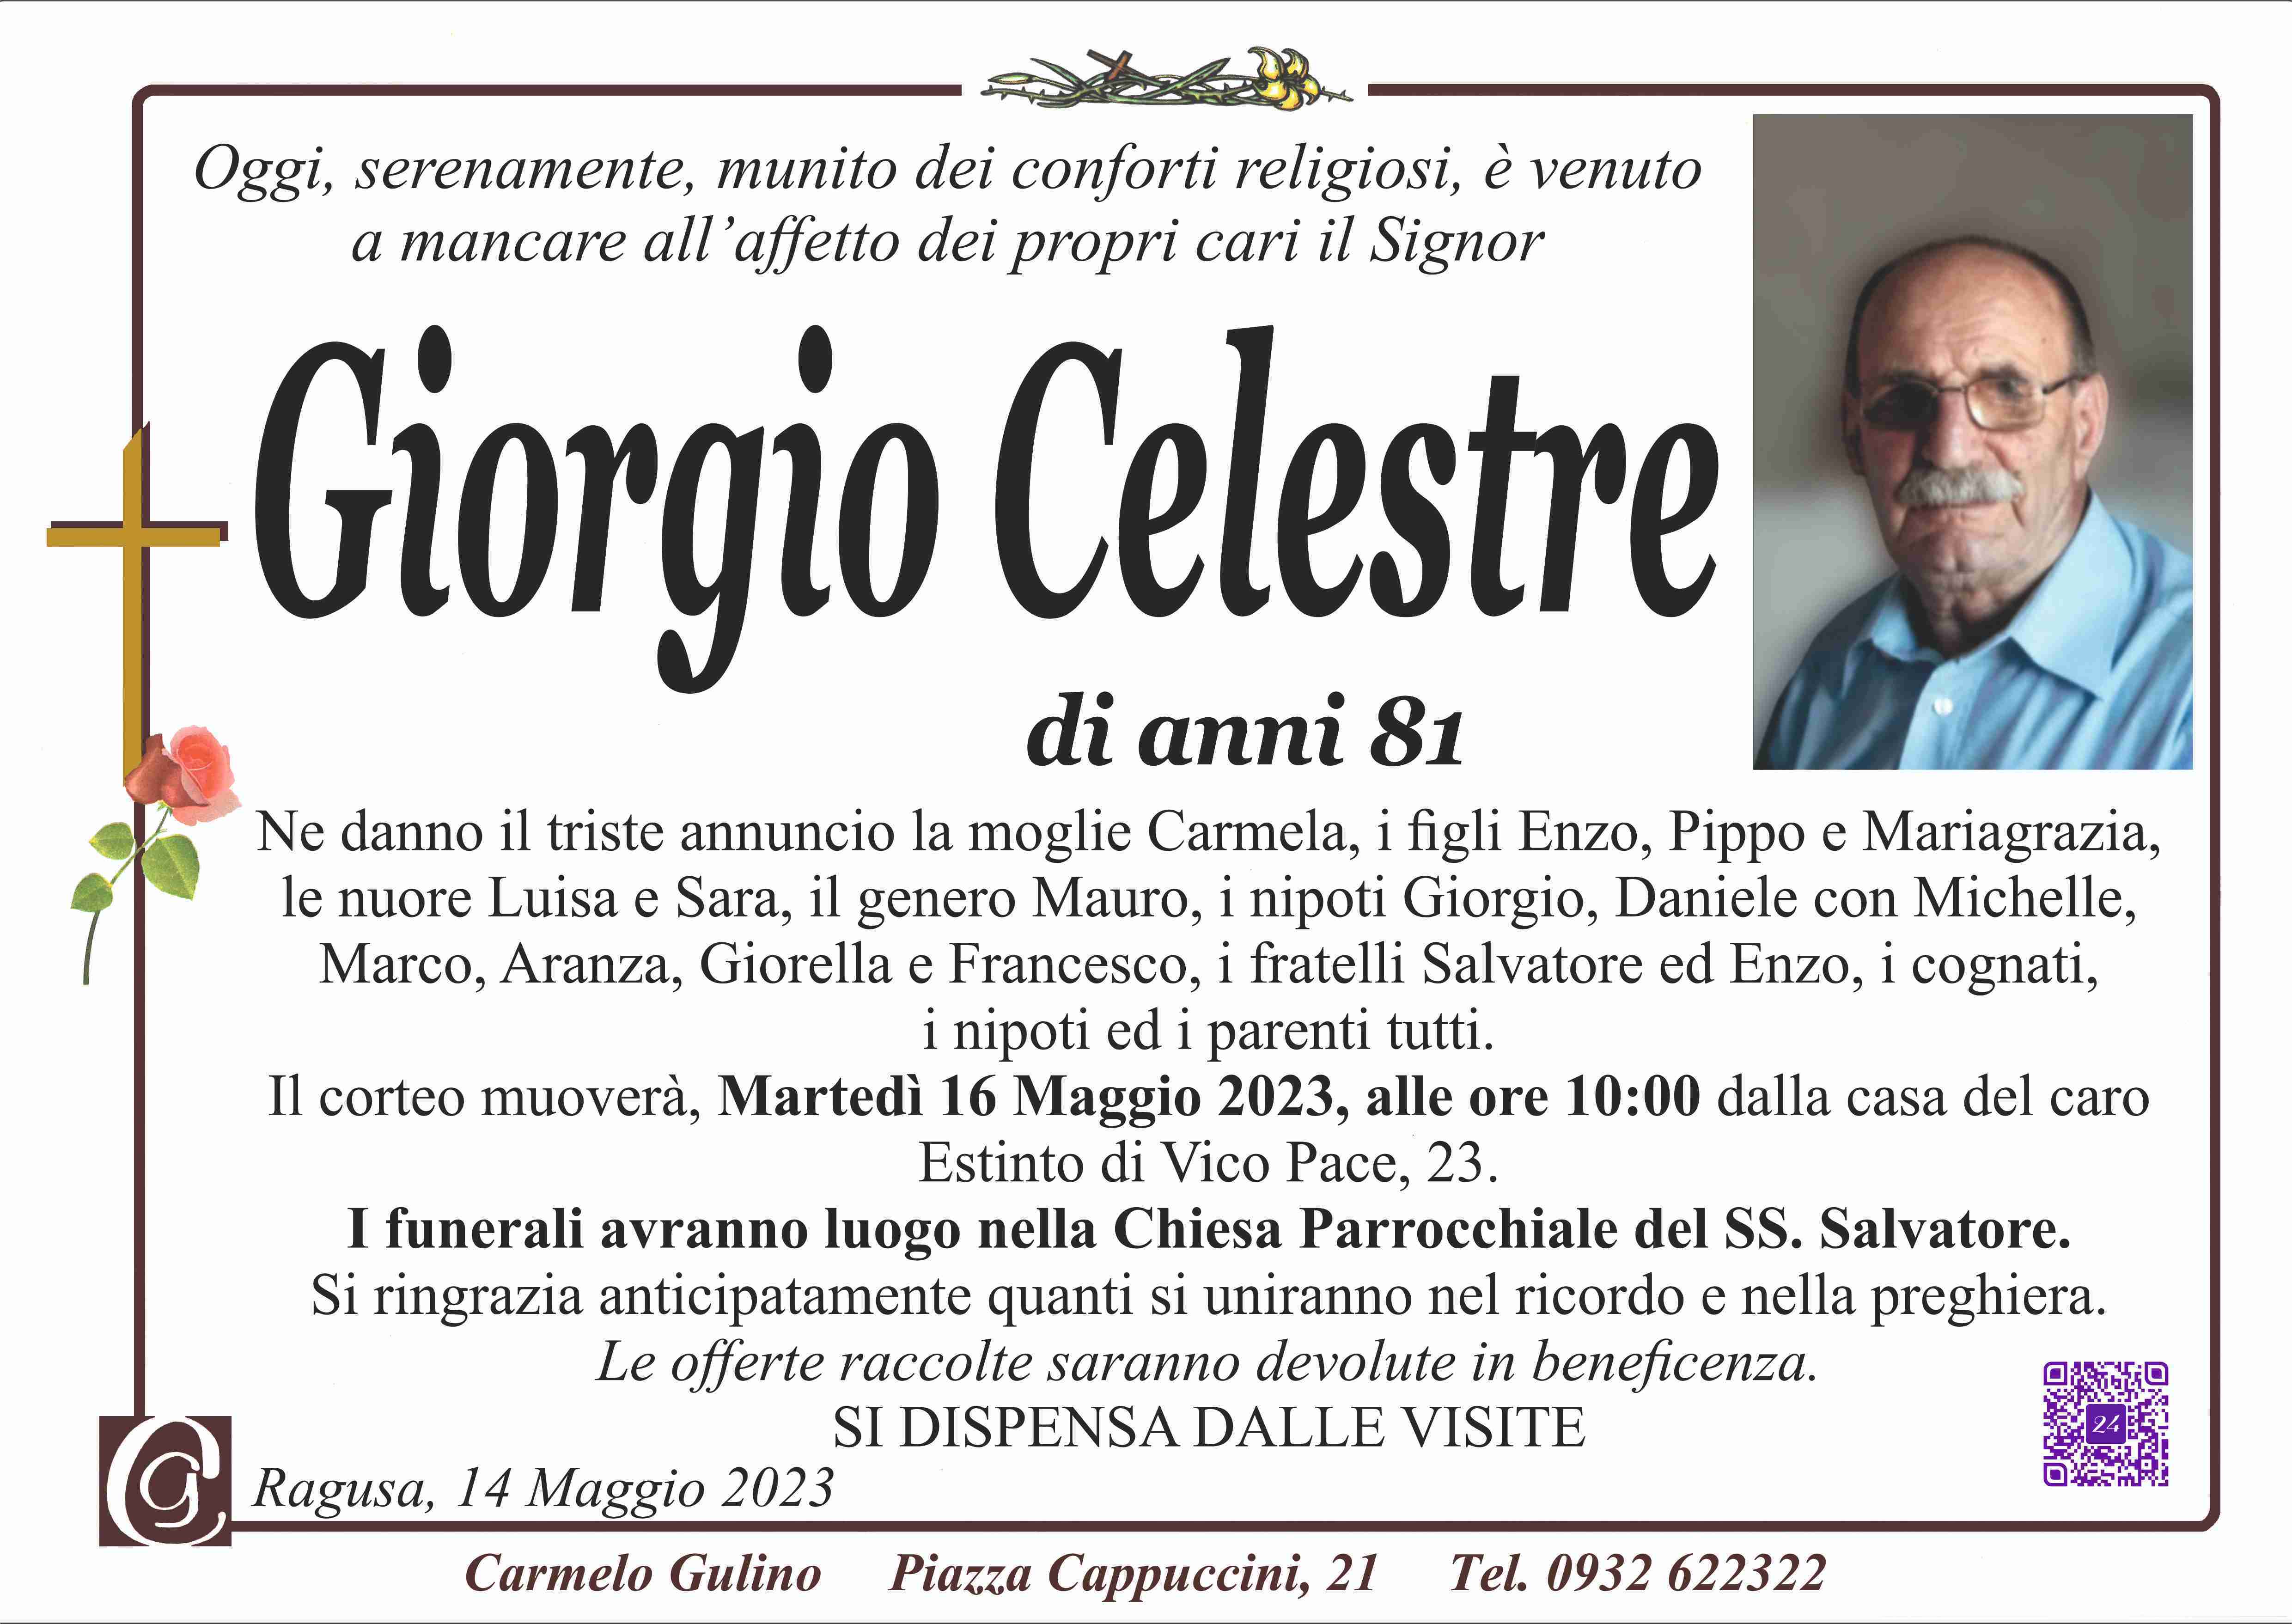 Giorgio Celestre